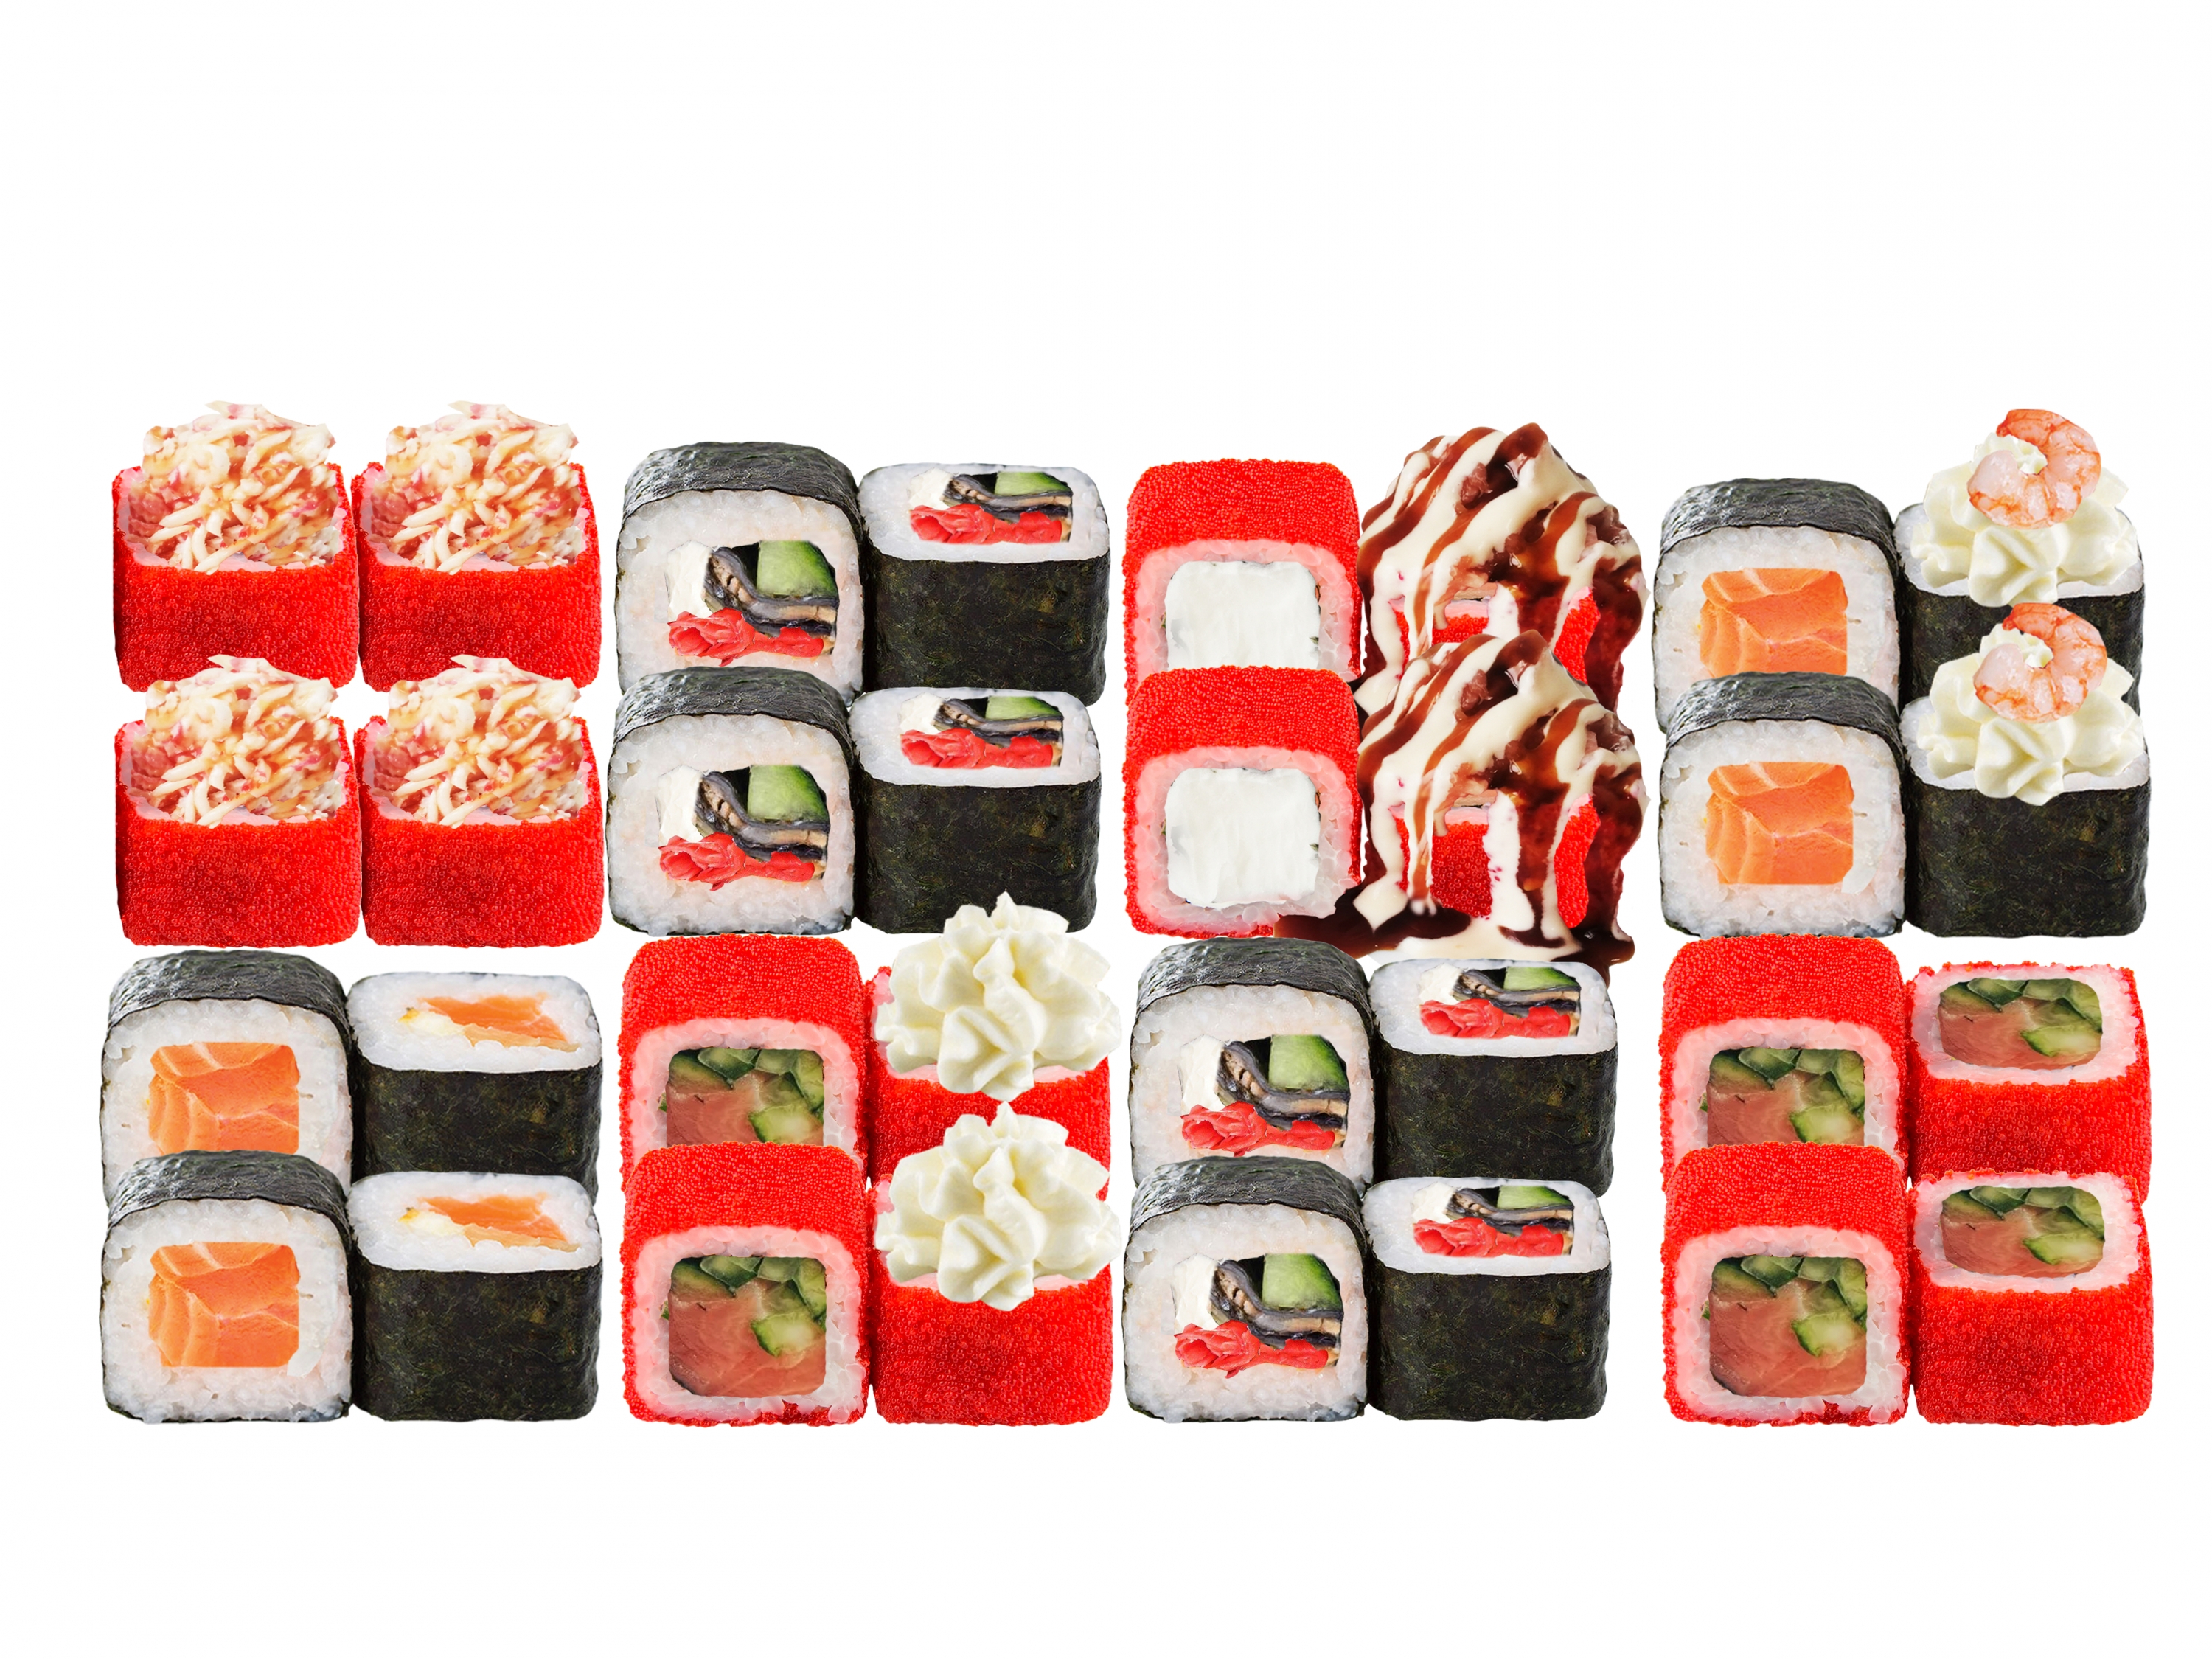 Заказать суши с доставкой вологда фото 78